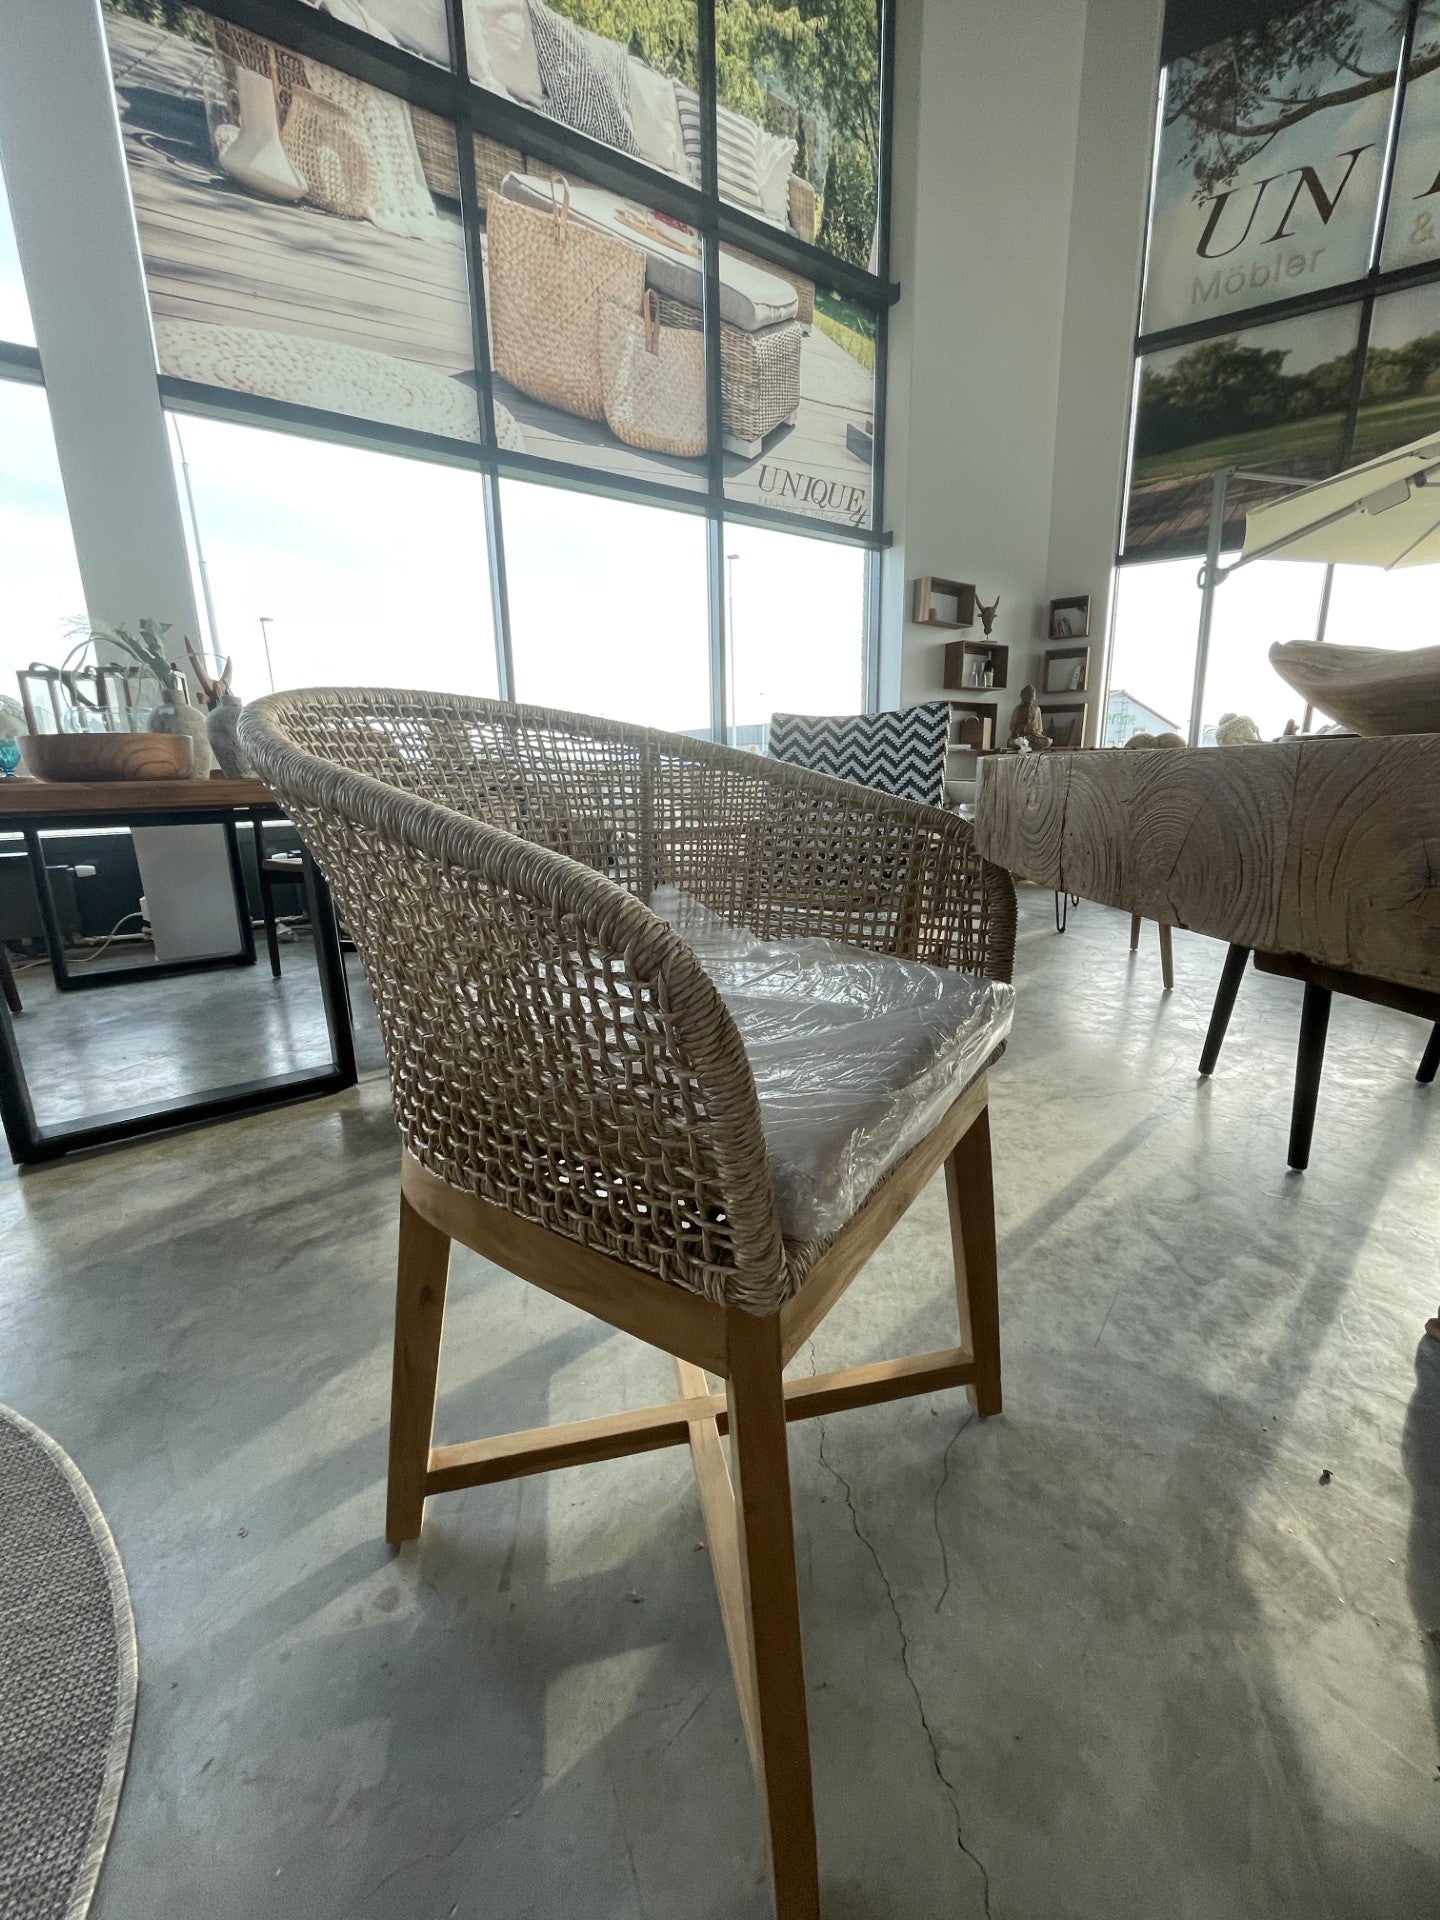 Bali Chair